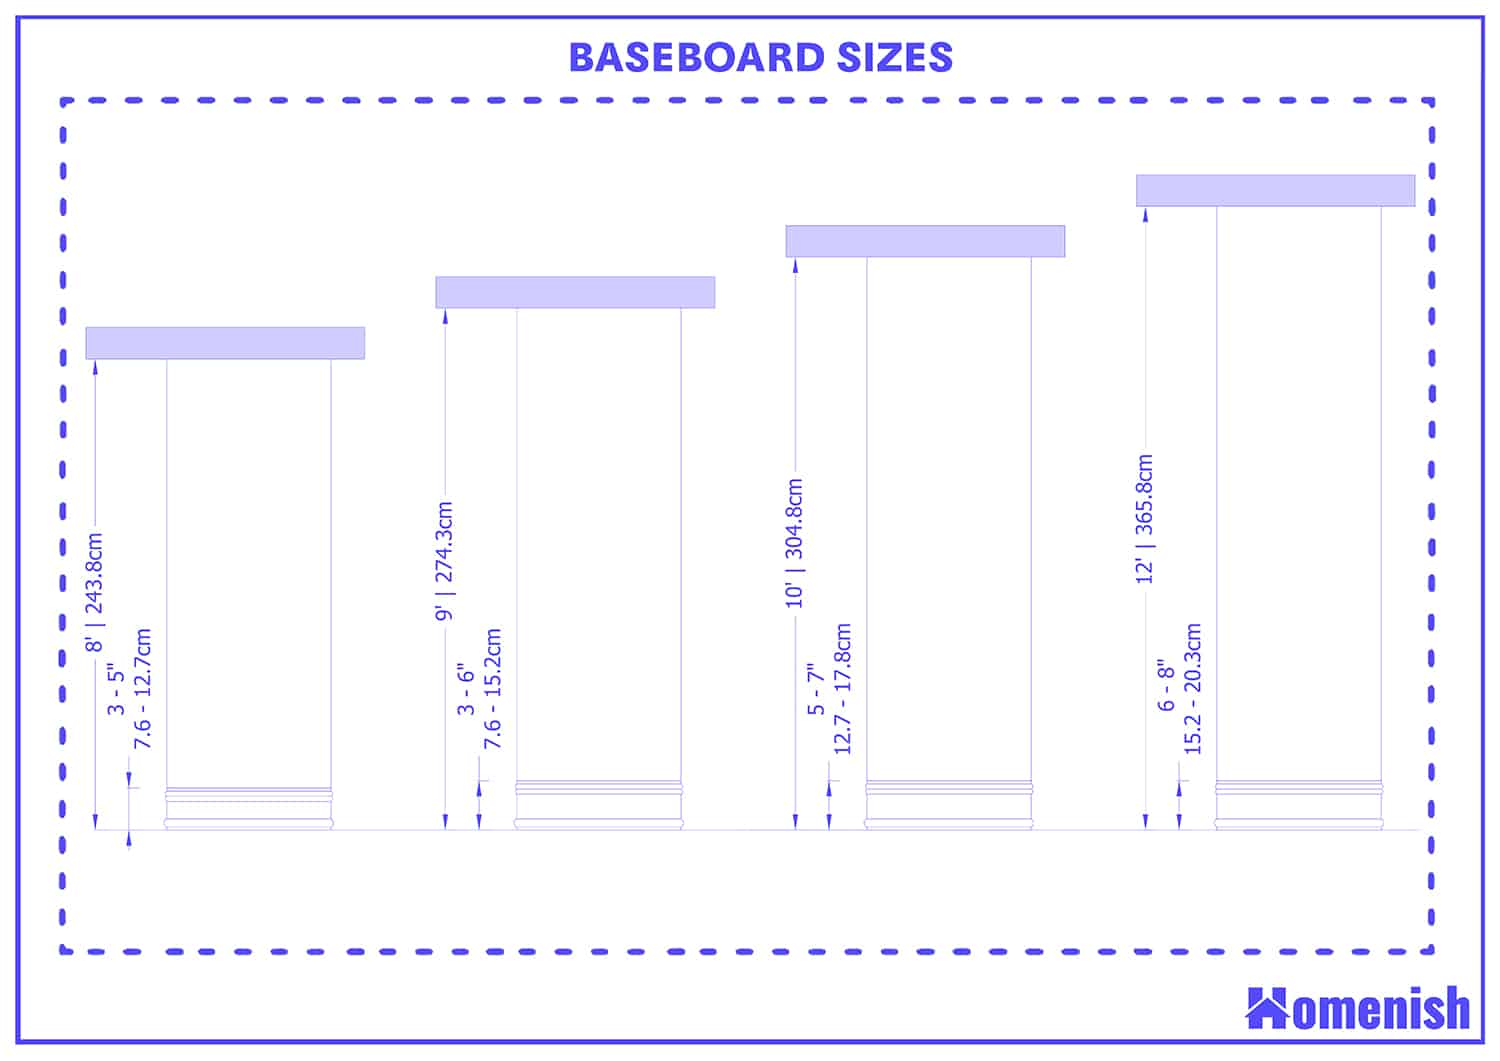 Baseboard sizes